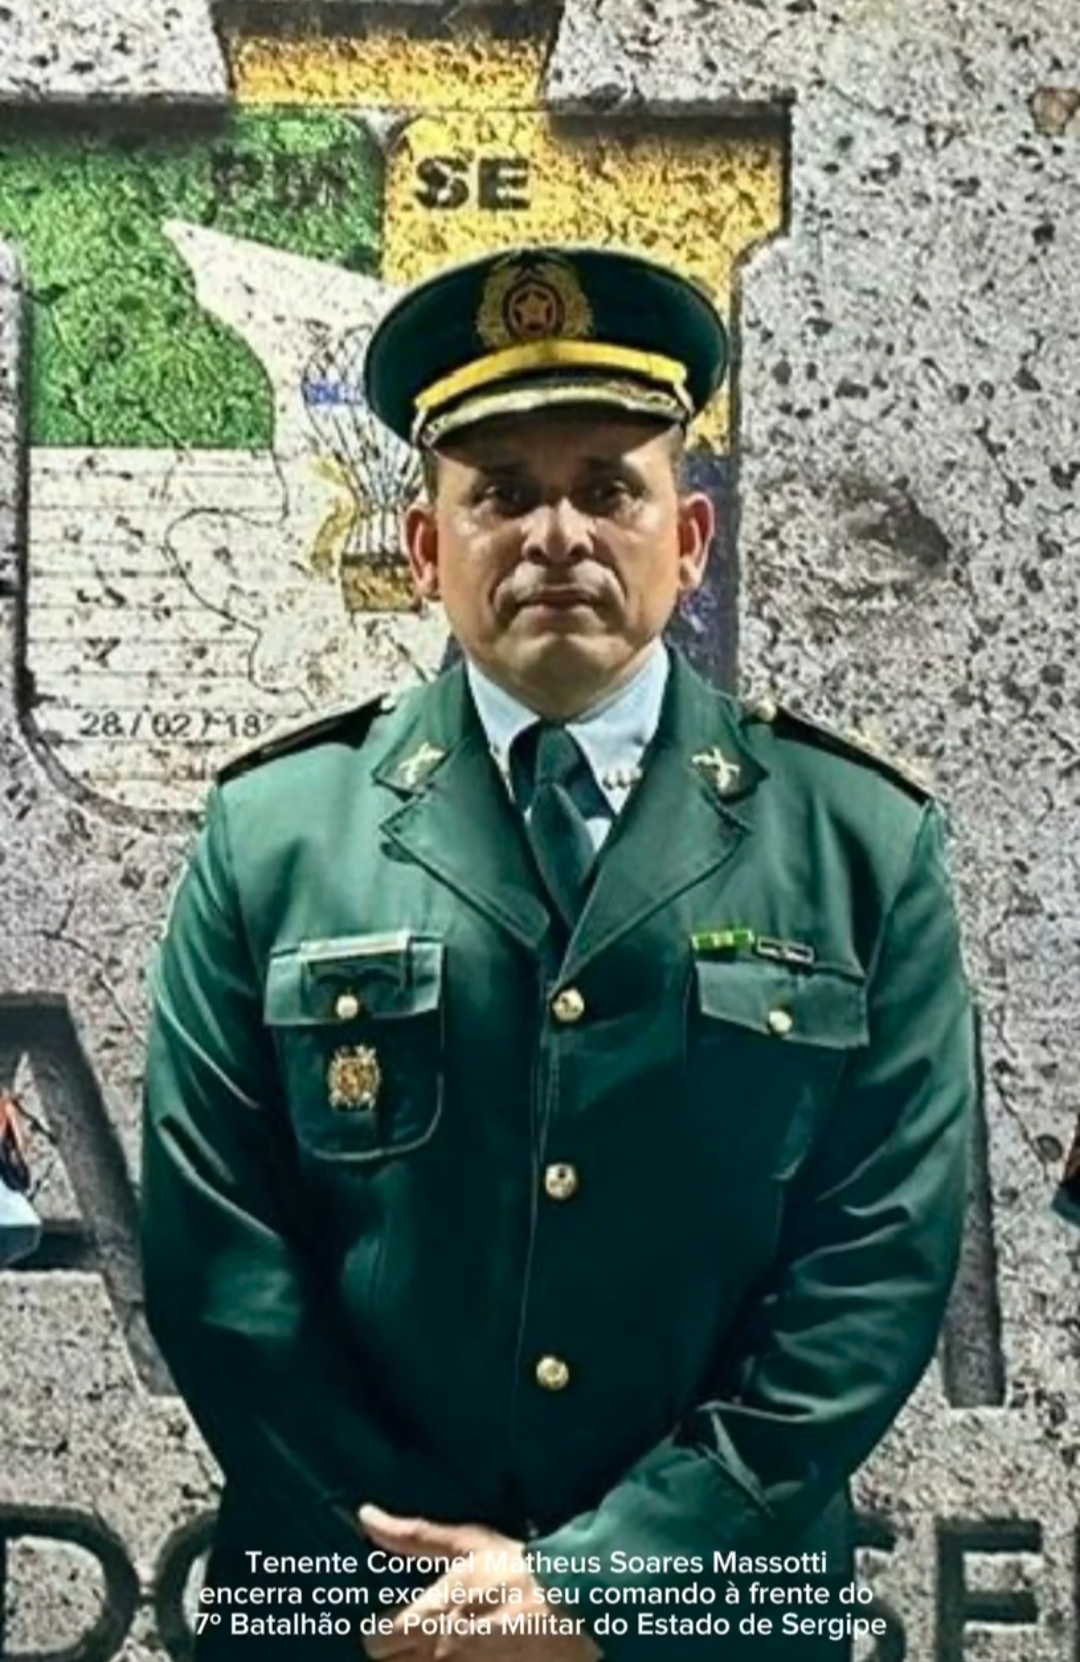 Tenente Coronel Matheus Soares Massotti encerra com excelência seu comando à frente do 7º Batalhão